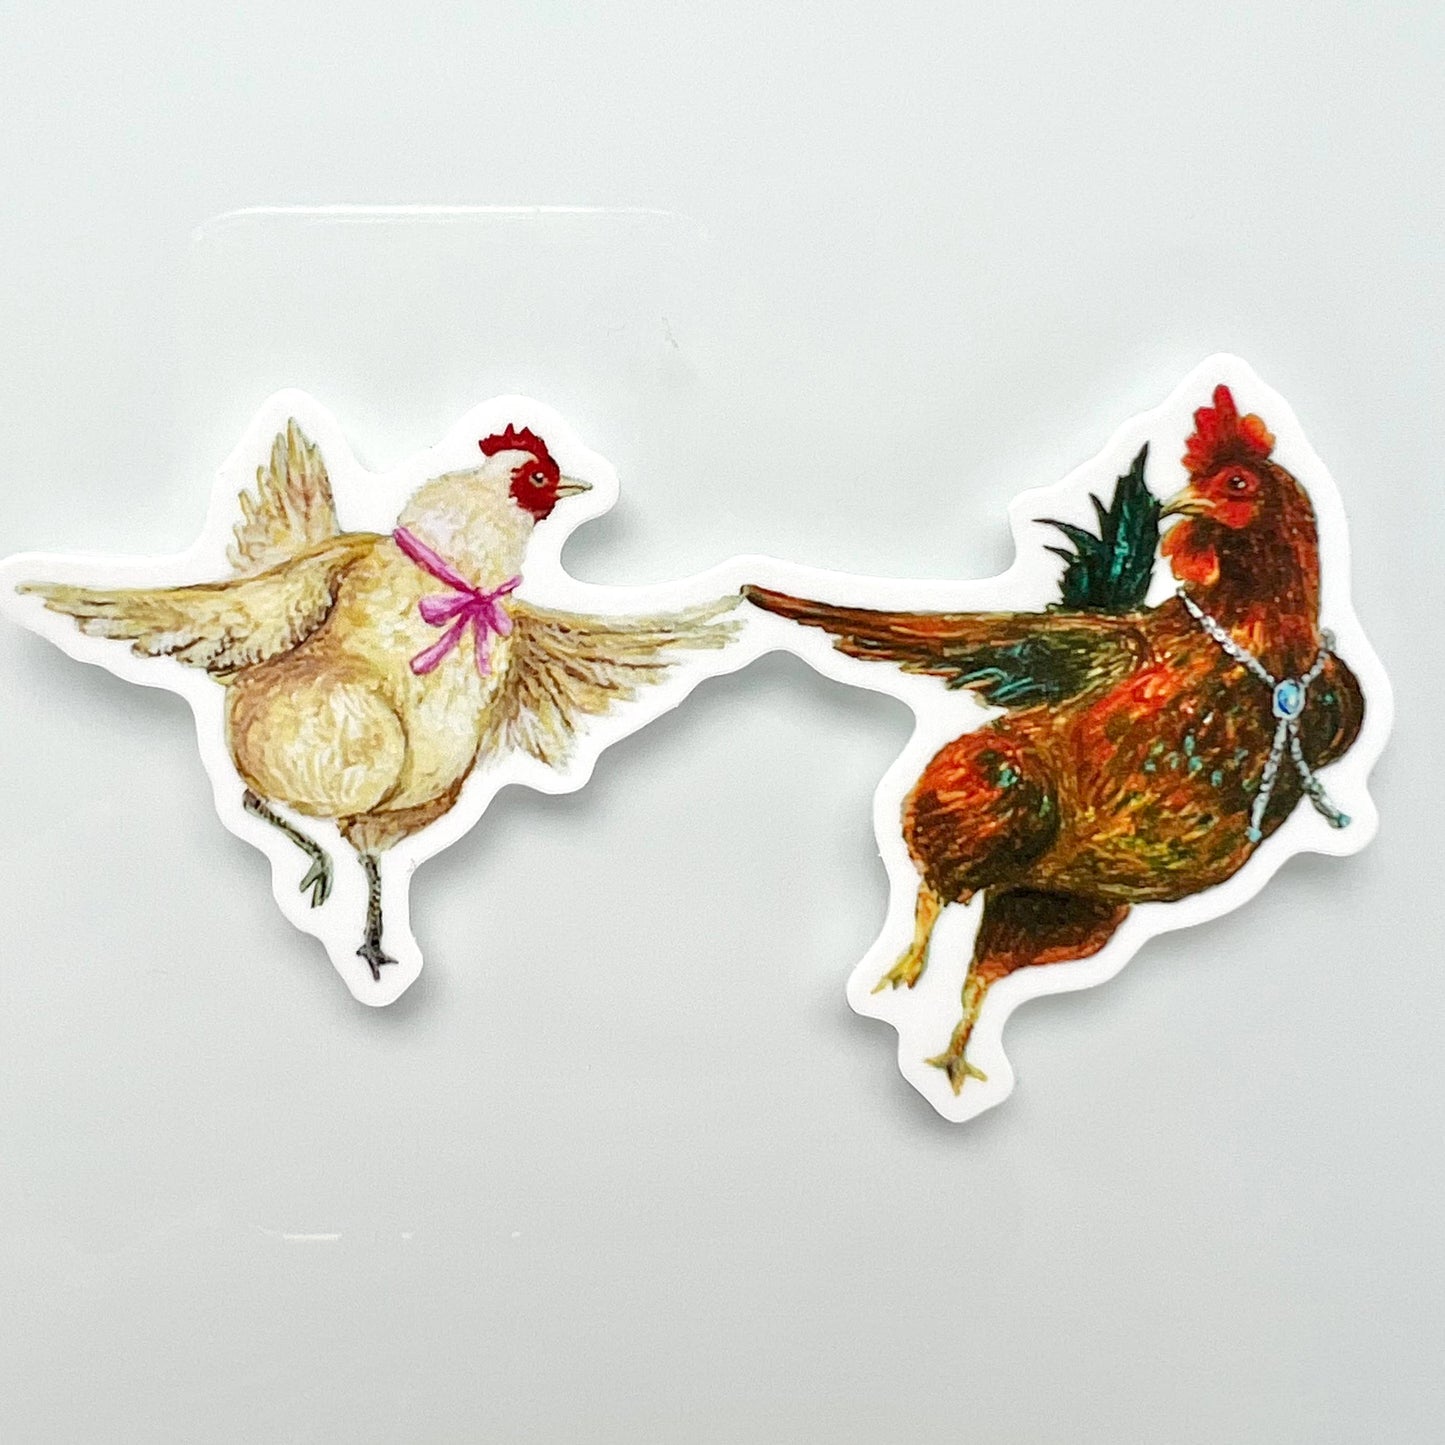 Dancing Rooster & Hen Vinyl Sticker